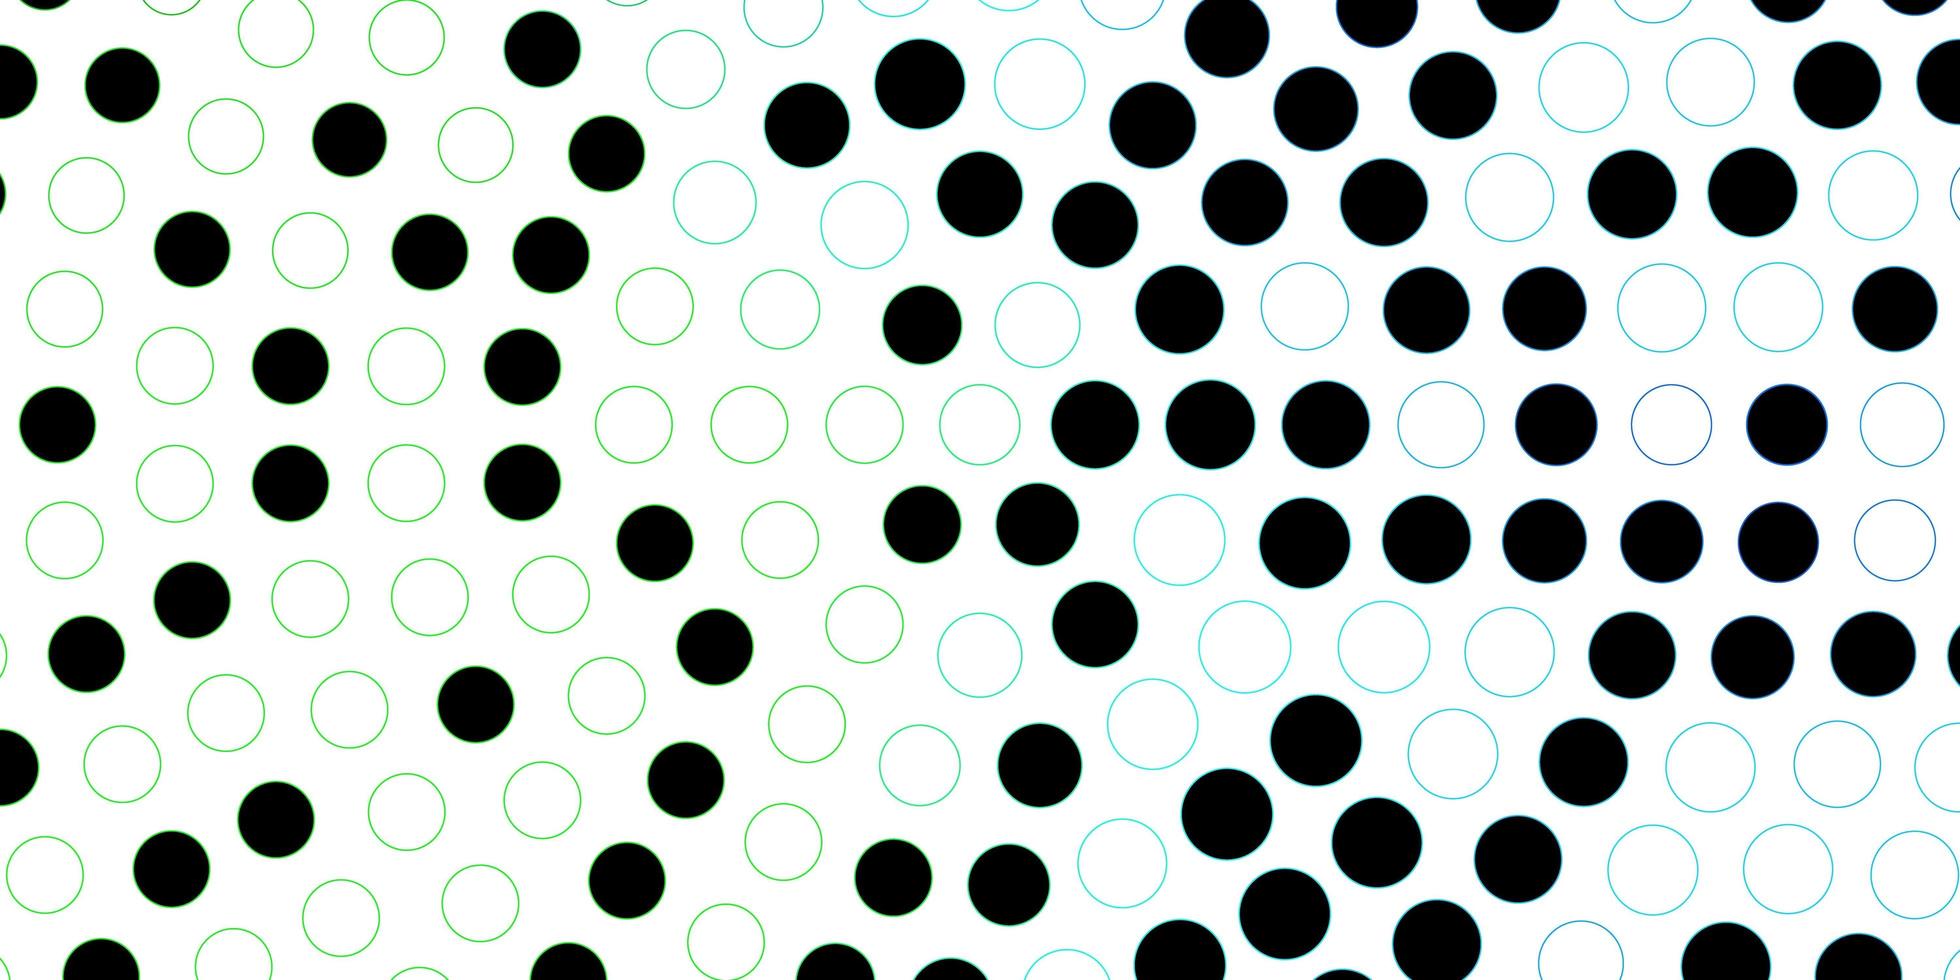 pano de fundo vector azul e verde escuro com pontos. ilustração com conjunto de esferas abstratas coloridas brilhantes. padrão para livretos, folhetos.